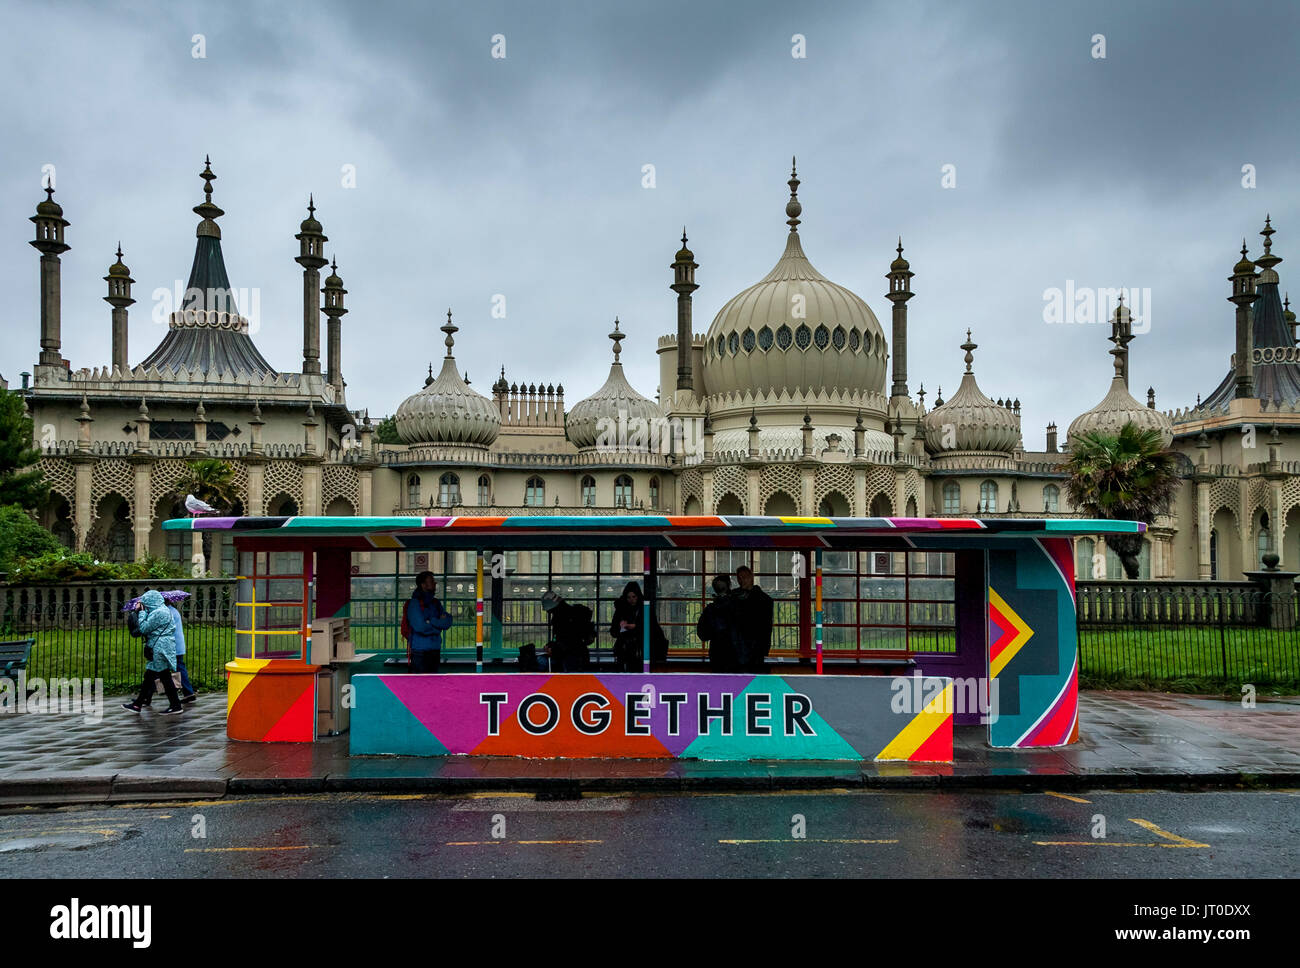 Personnes en attente d'un bus à l'intérieur d'un abri bus peintes de couleurs vives, Brighton, Sussex, UK Banque D'Images